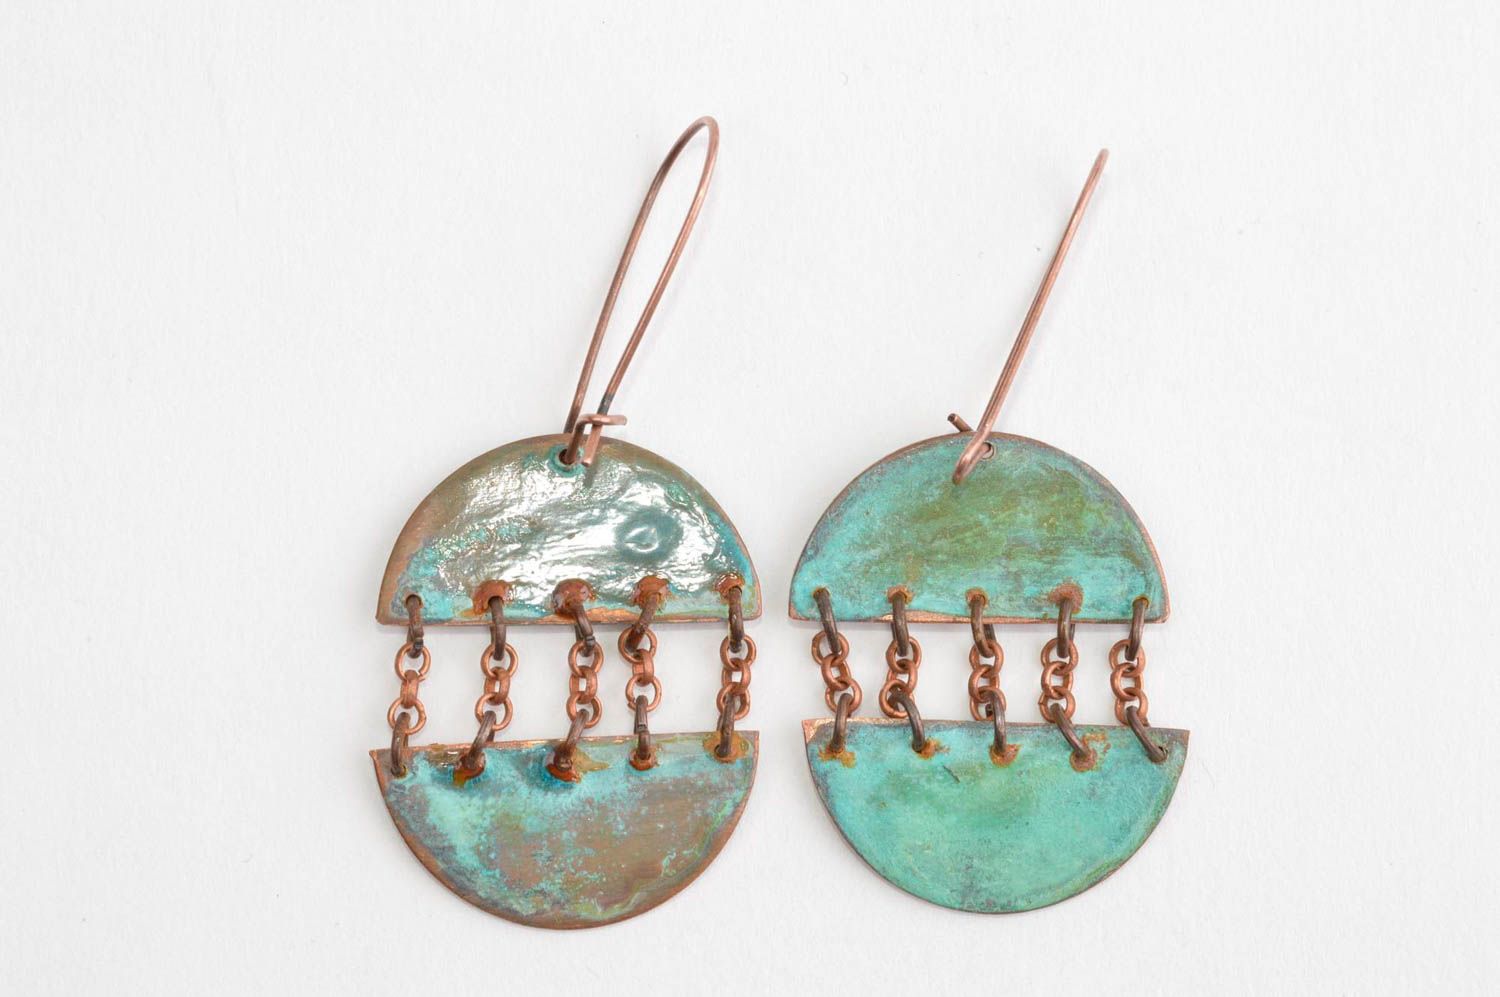 Copper jewelry unusual earrings gift ideas copper accessory designer earrings photo 2